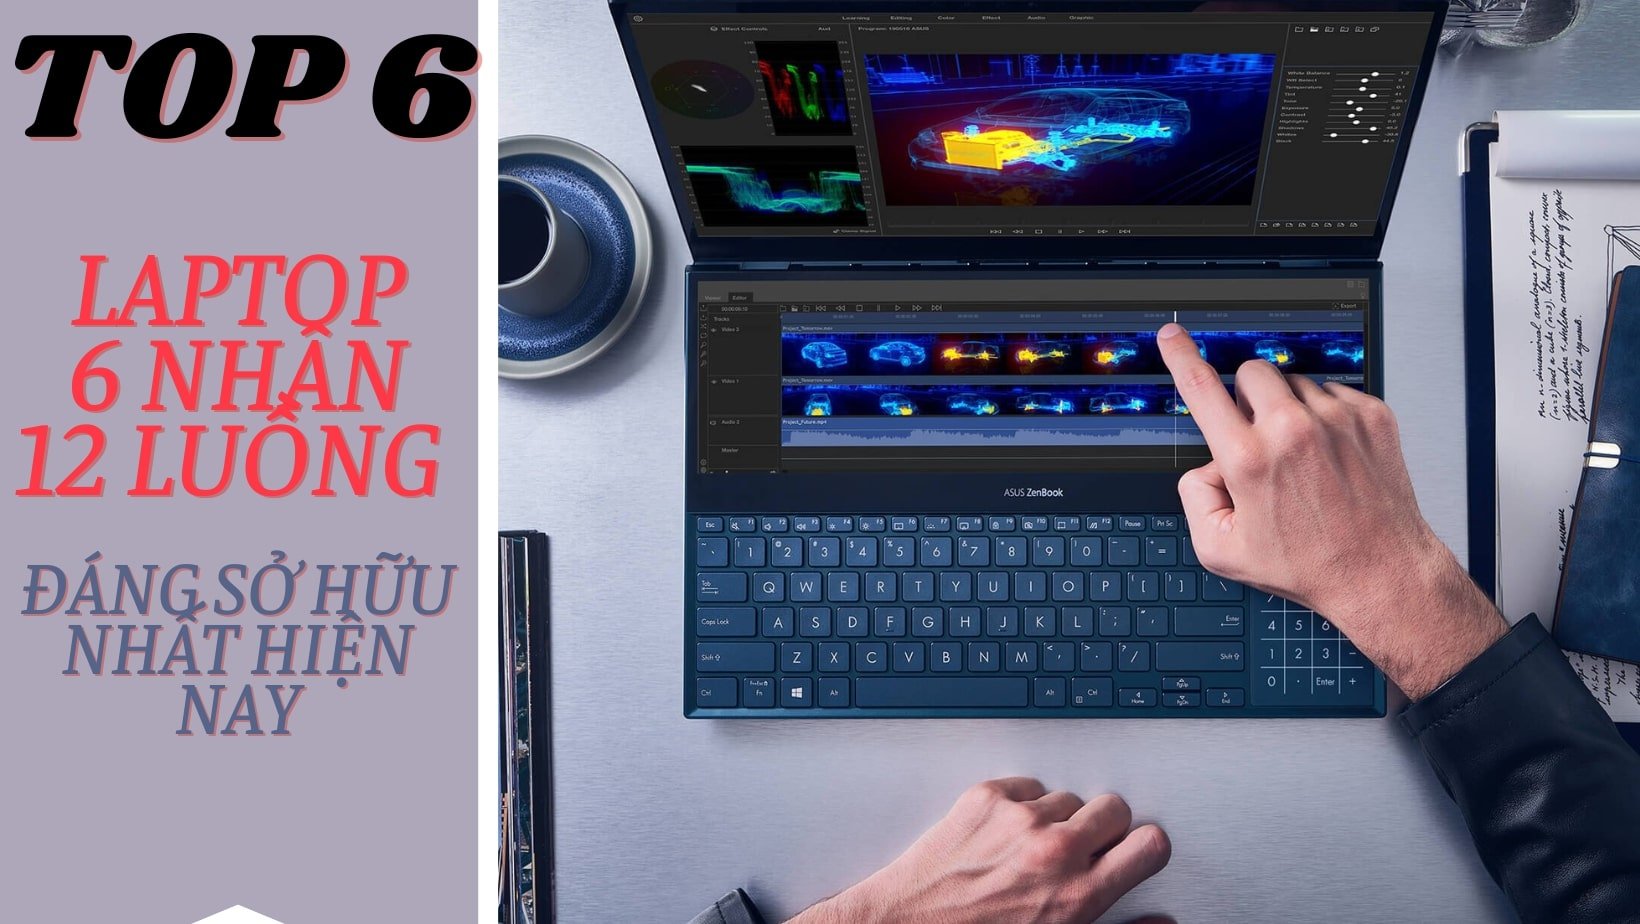 Laptop 6 nhân: Máy tính xách tay 6 nhân chính là lựa chọn hoàn hảo cho những người yêu thích công nghệ và game thủ. Hiệu suất xử lý cao giúp máy chạy mượt mà các tác vụ nặng như đồ hoạ và game. Hãy xem hình ảnh để khám phá thêm về sức mạnh của laptop 6 nhân.